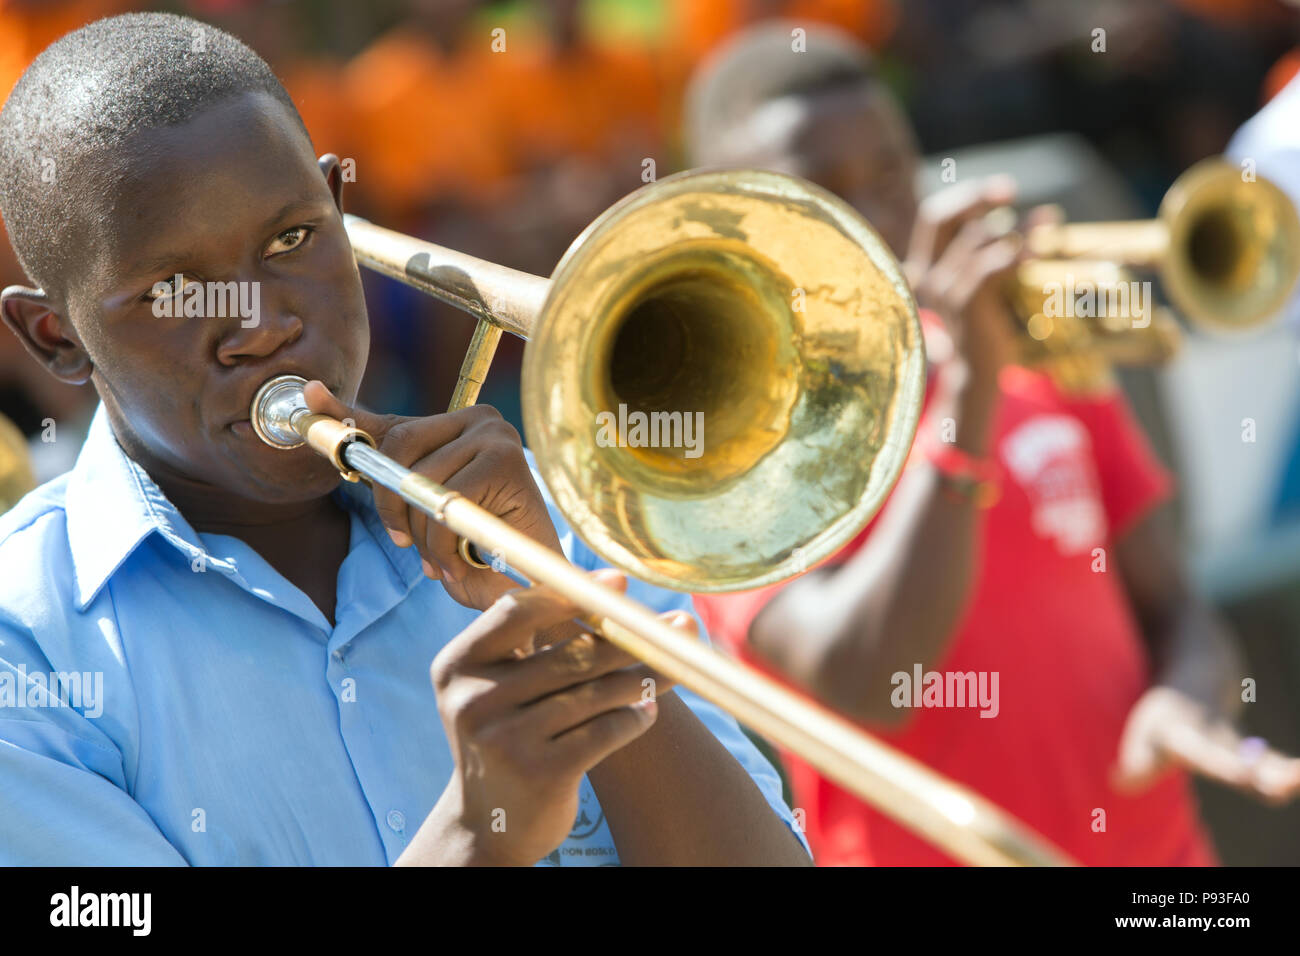 Bombo, Uganda - Band of Don Bosco Vocational Training Center, Bombo. Stock Photo